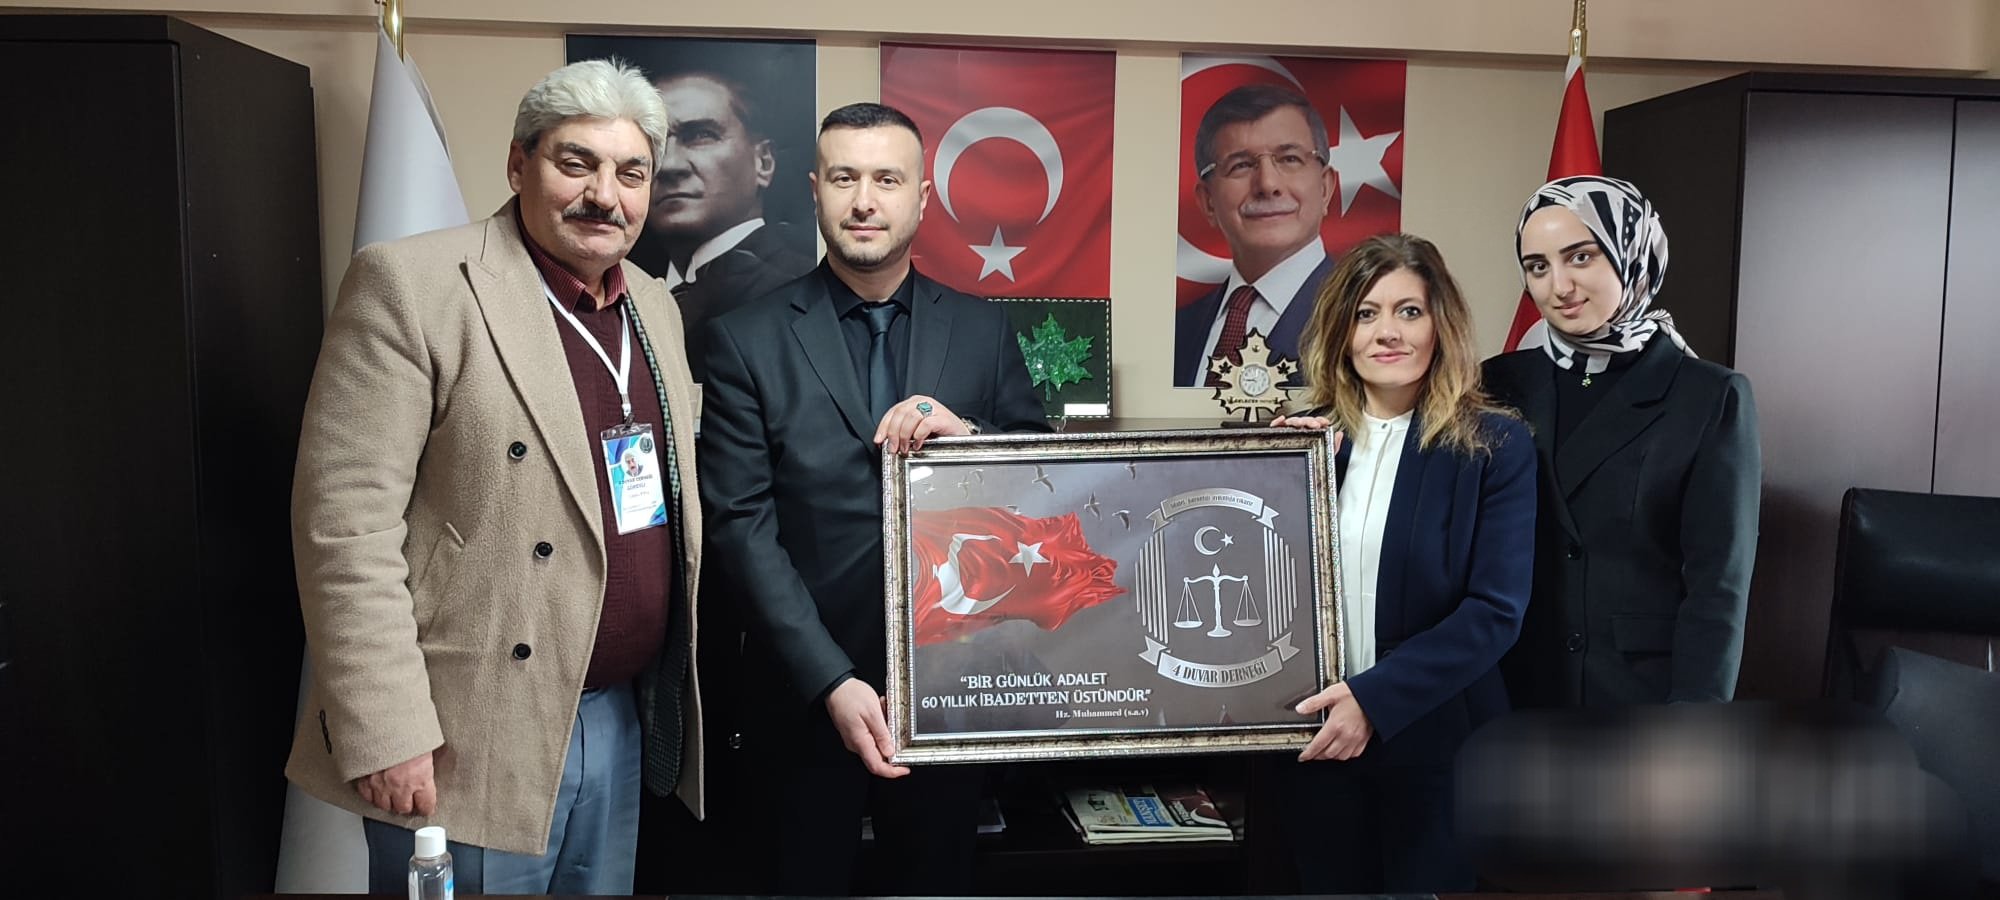 Mahkumların cezaevinde ve tahliye sonrası kronikleşen sorunlarına çözümler üretmek ve önermek için kurulan 4Duvar derneği Genel Başkanı Özkan Yormaz ziyarette bulundu.